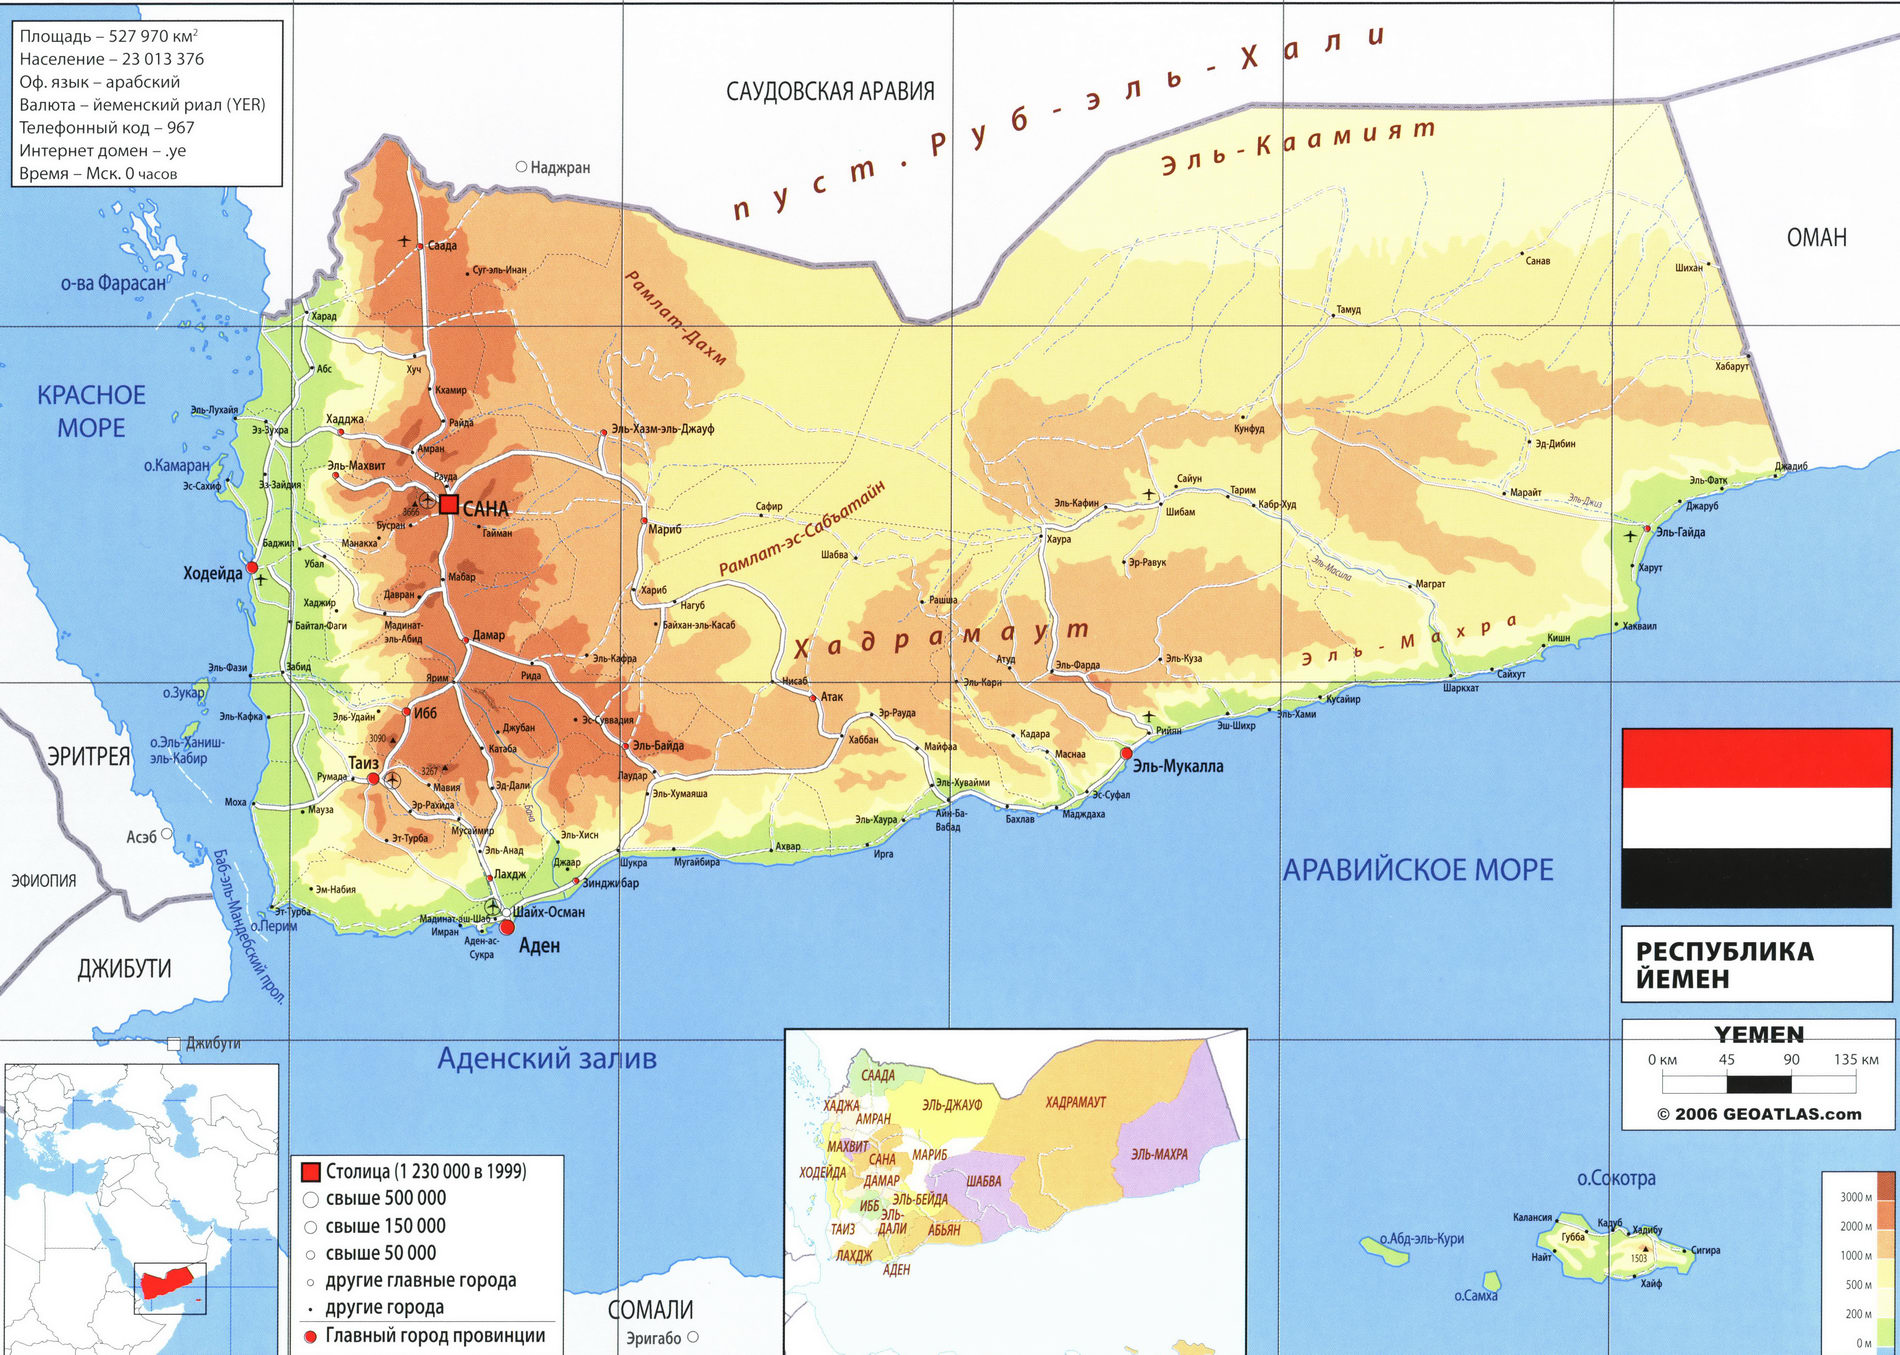 Йемен карта на русском языке